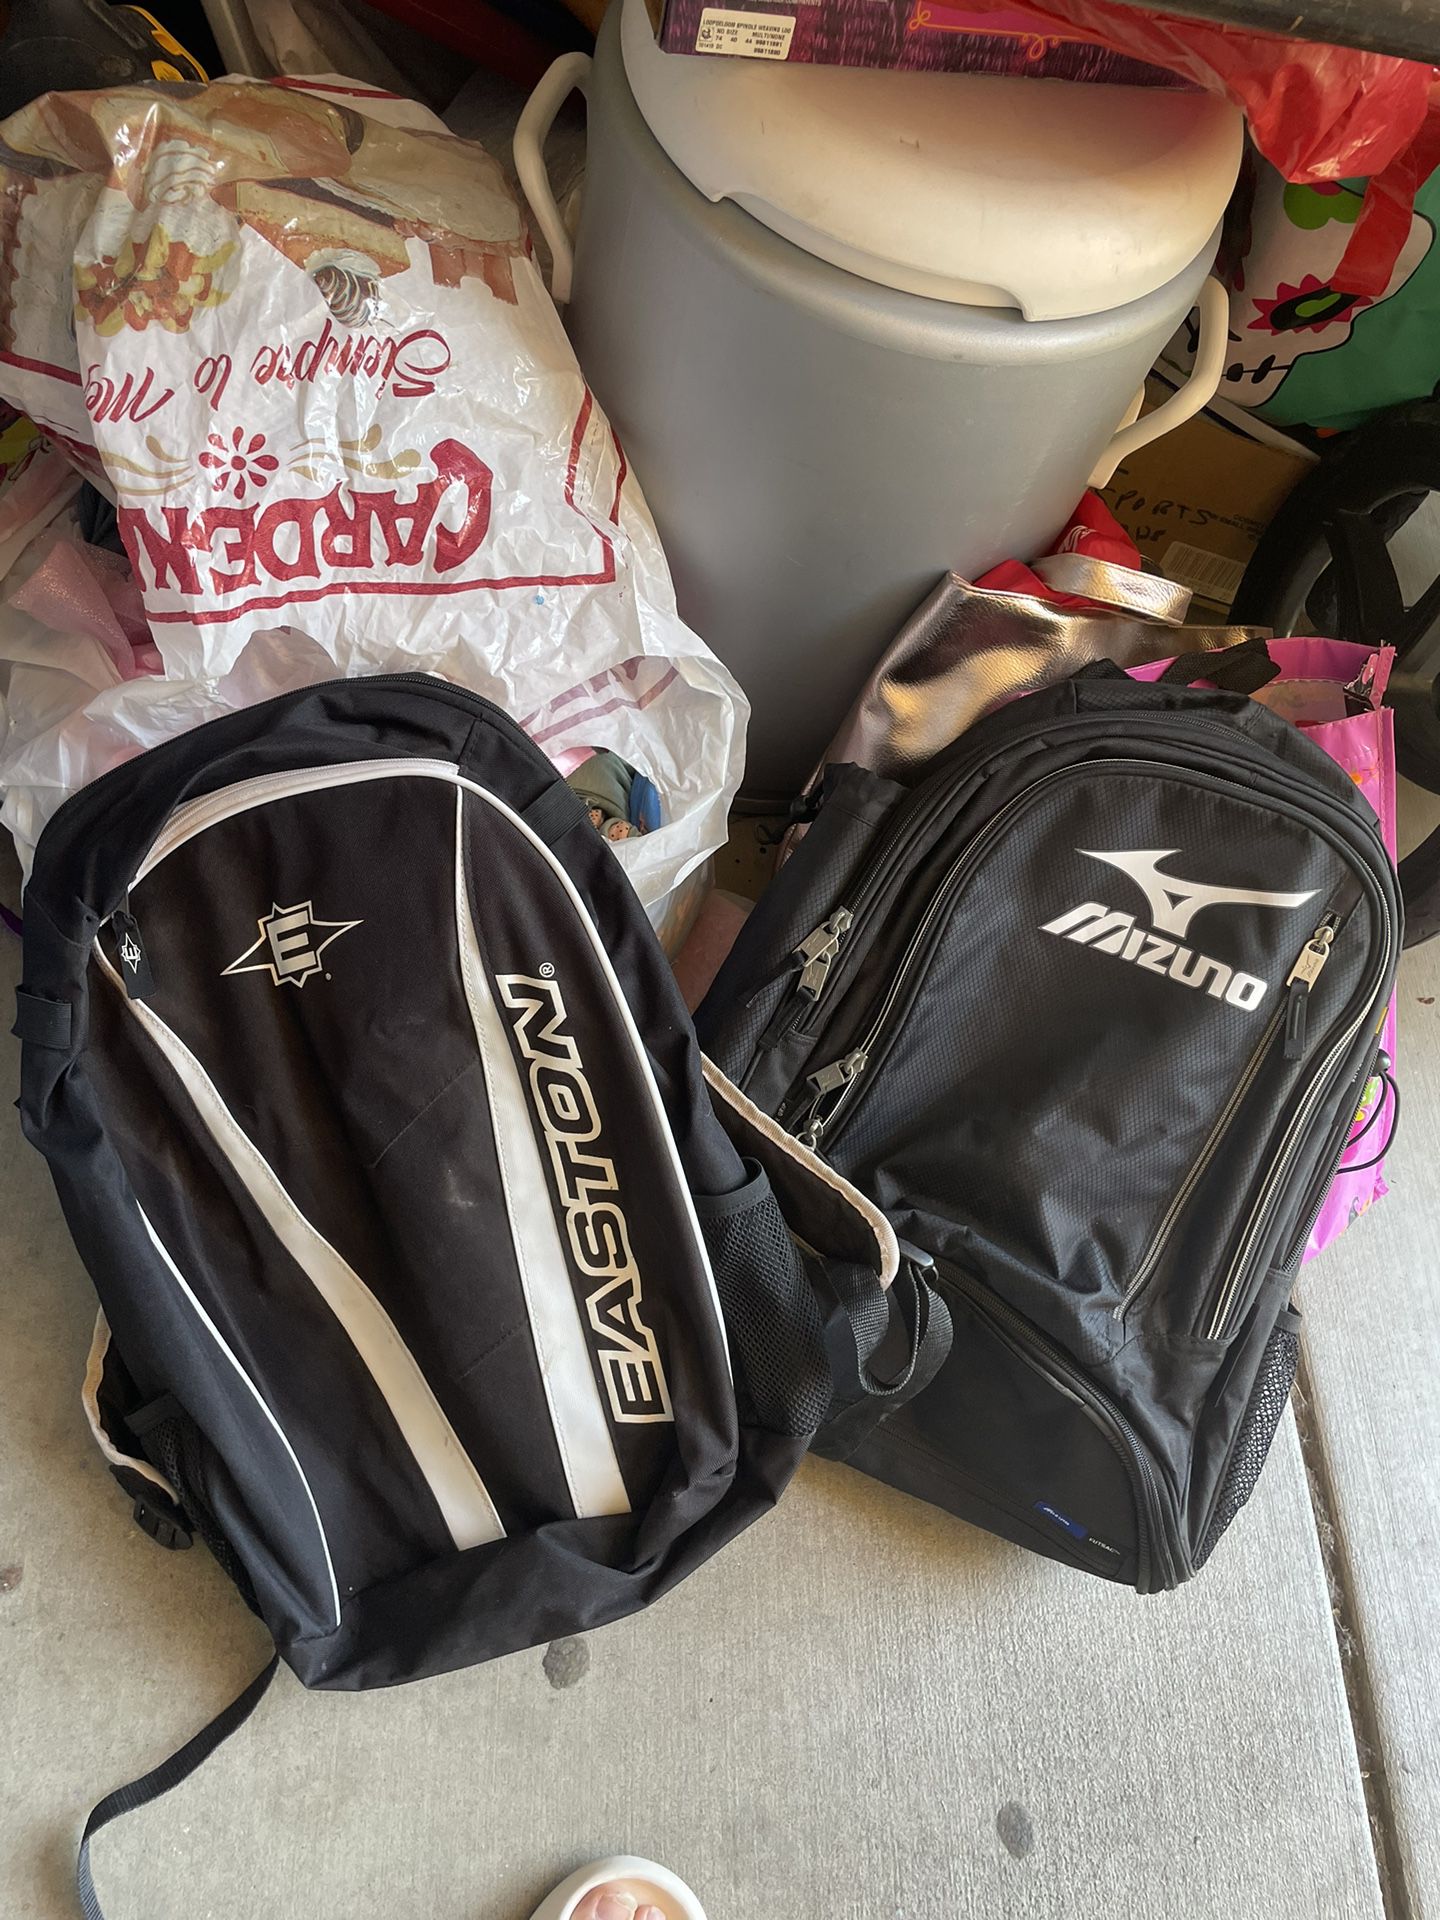 2 sports / baseball backpacks both for $10 